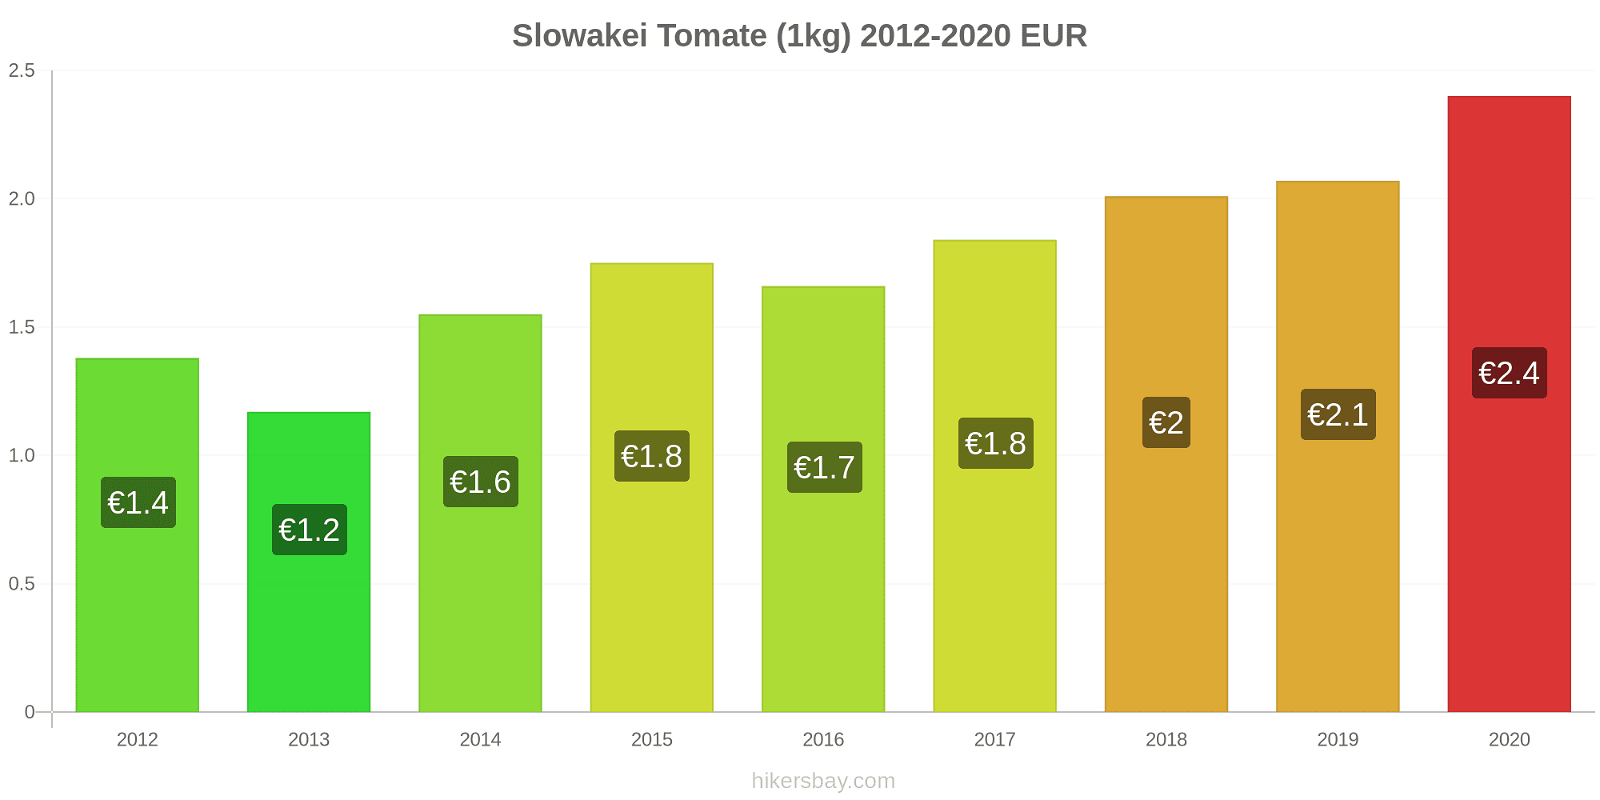 Slowakei Preisänderungen Tomaten (1kg) hikersbay.com